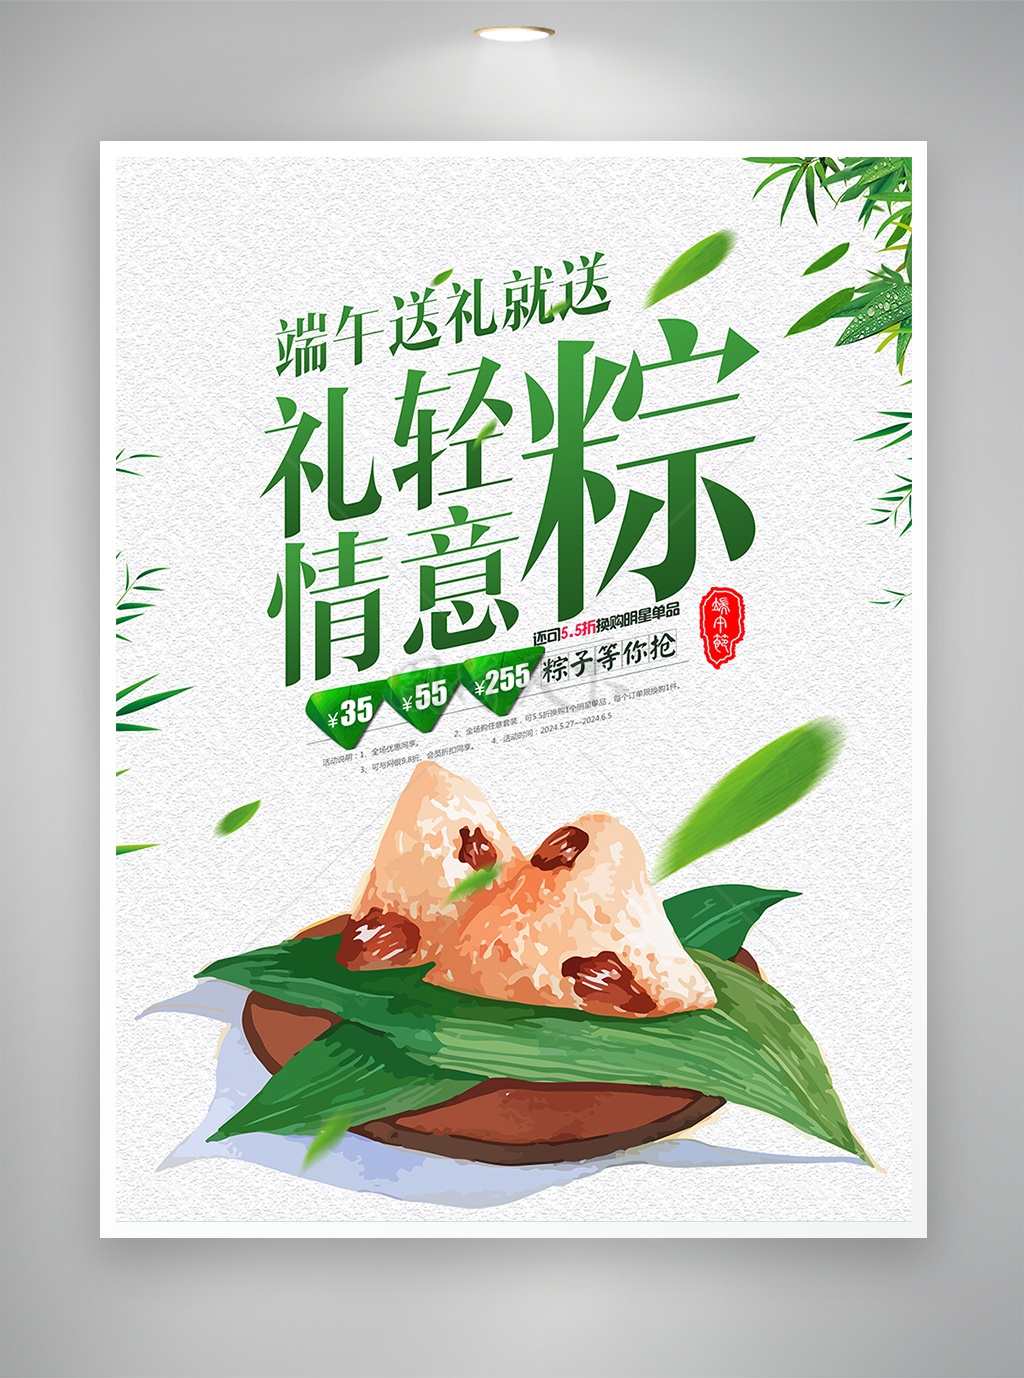 简约创意端午节粽子促销宣传海报